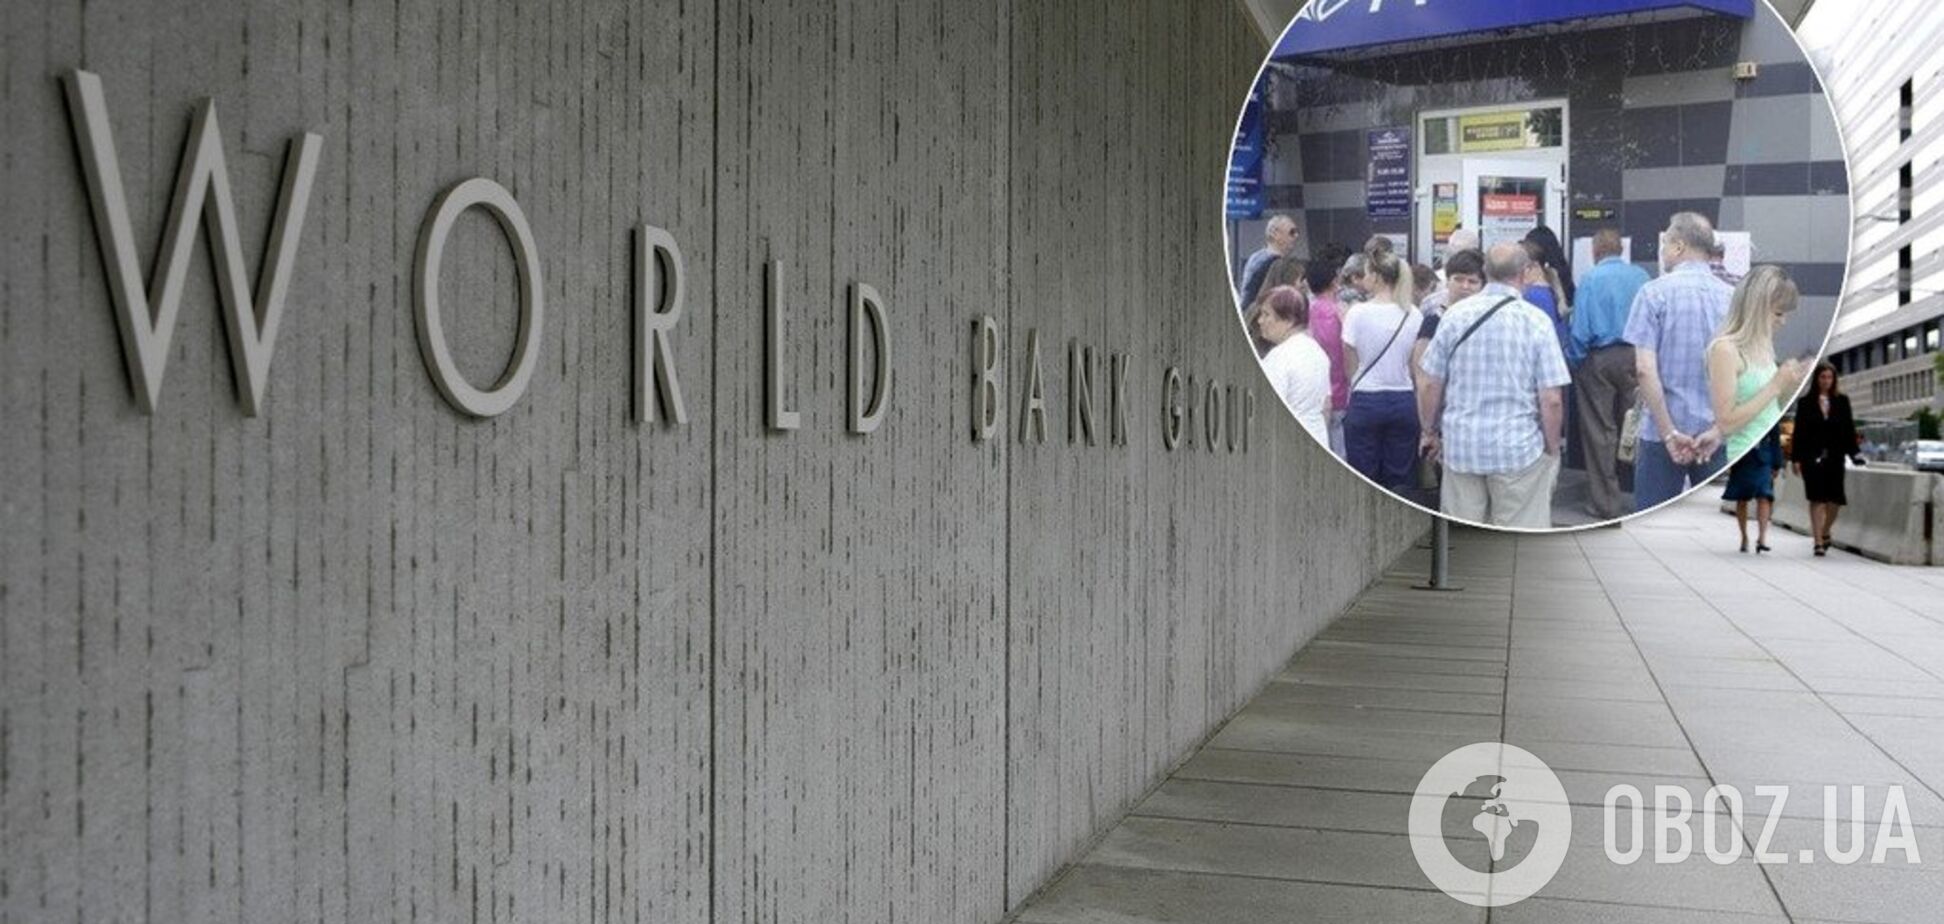 Всемирный банк решил купить крупный банк Украины